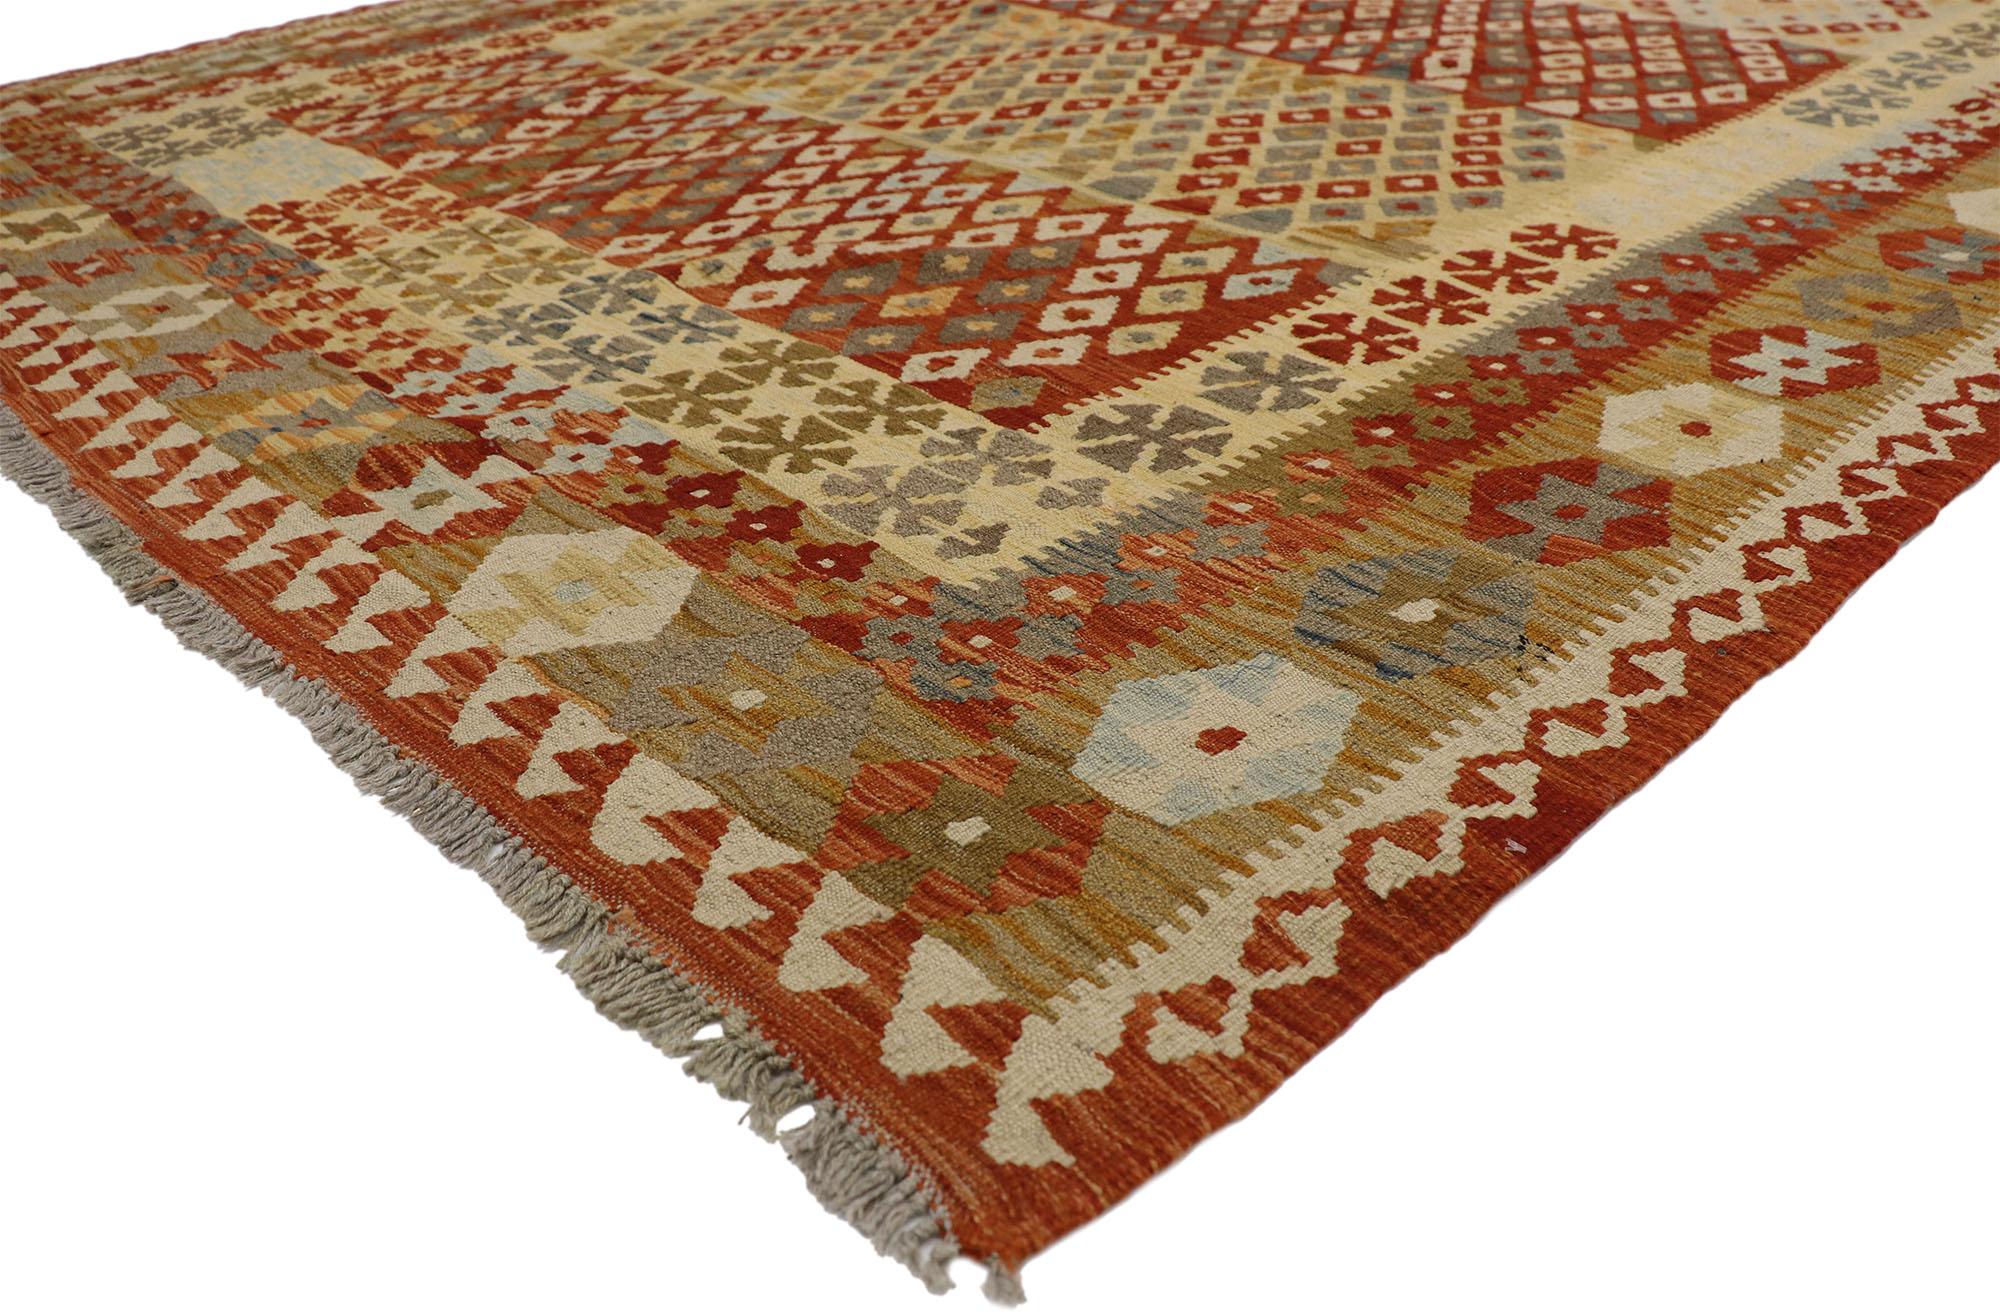 80160 Vintage Afghani Kilim Rug, 06'08 x 09'05. Dans ce tapis kilim afghan vintage en laine tissée à la main, le style Contemporary Santa Fe fusionne harmonieusement avec l'enchantement tribal, offrant un design et une culture captivants. Les motifs